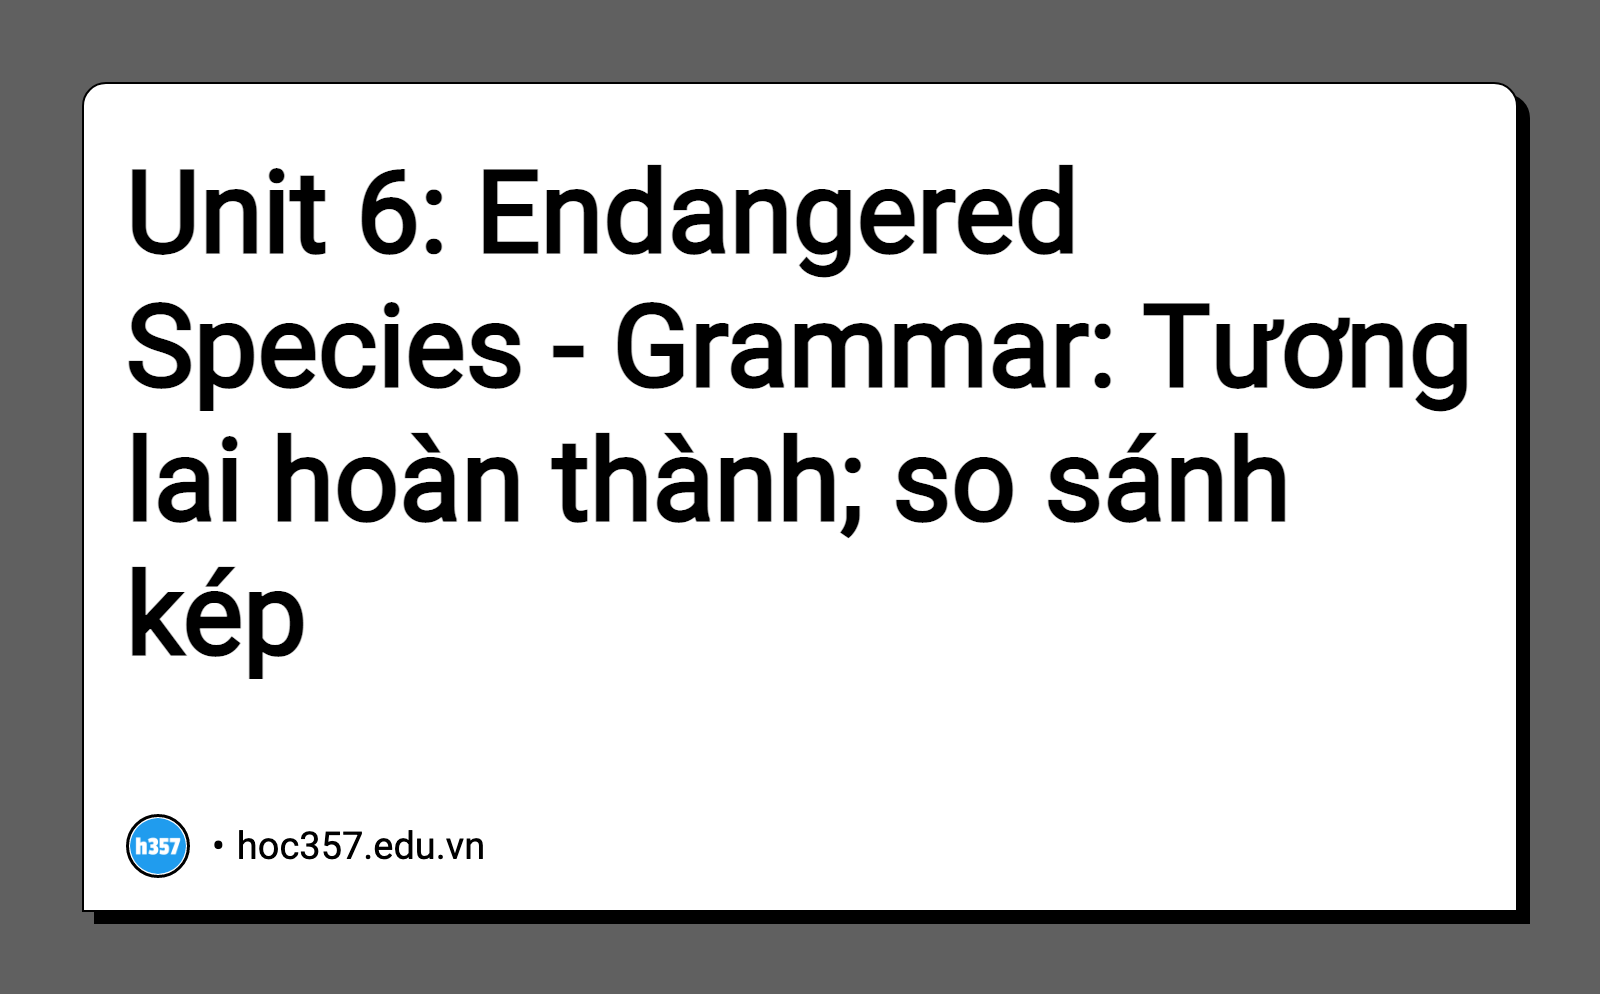 Hình minh họa Unit 6: Endangered Species - Grammar: Tương lai hoàn thành; so sánh kép